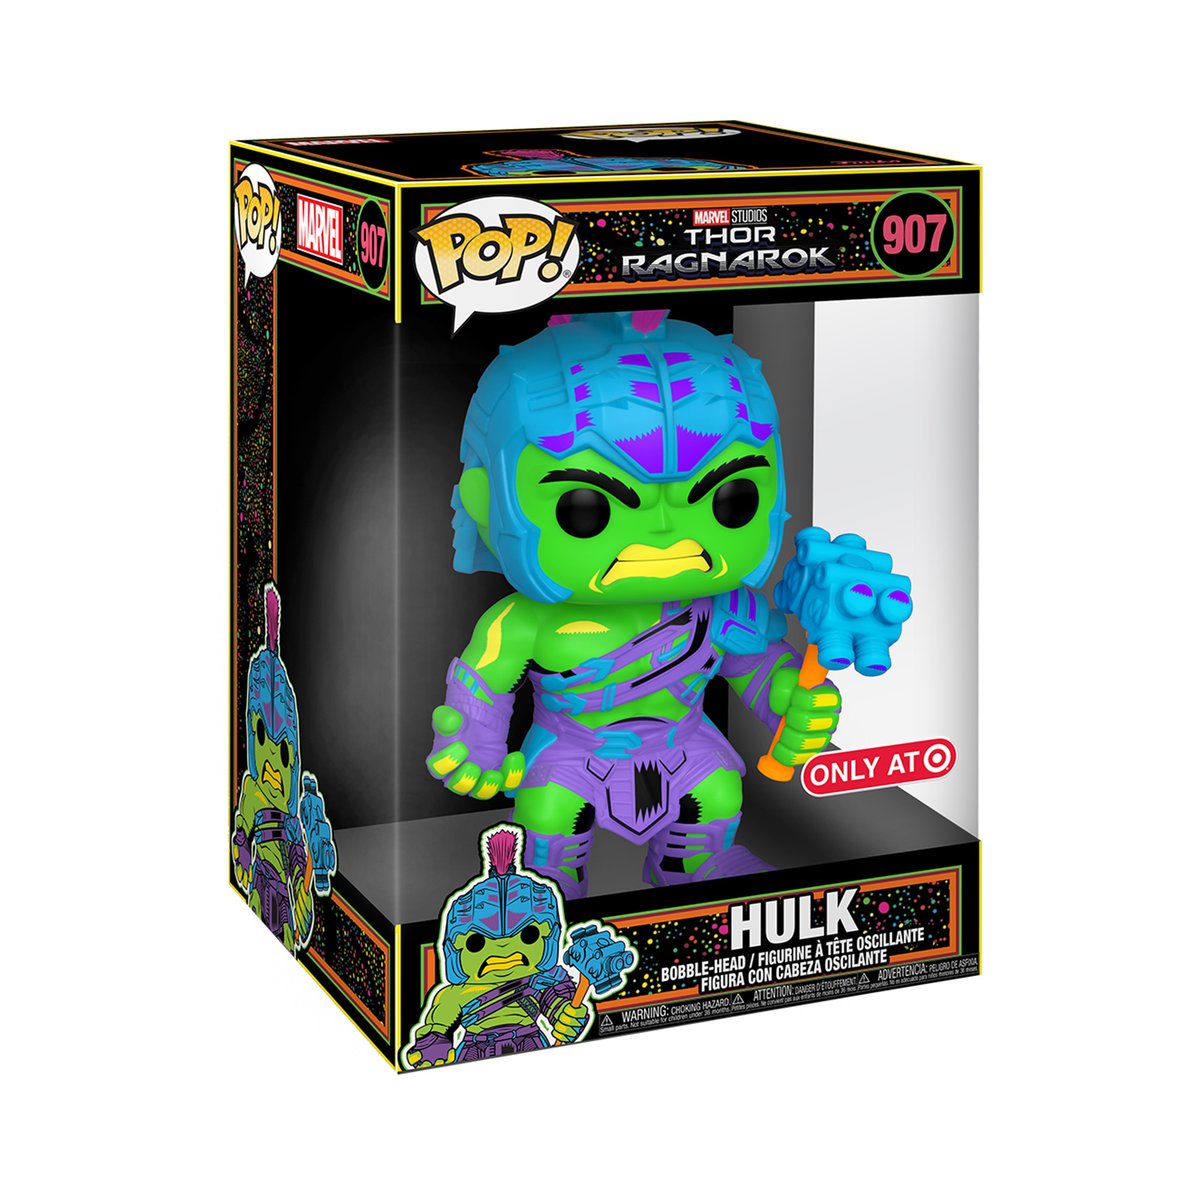 Hulk #907